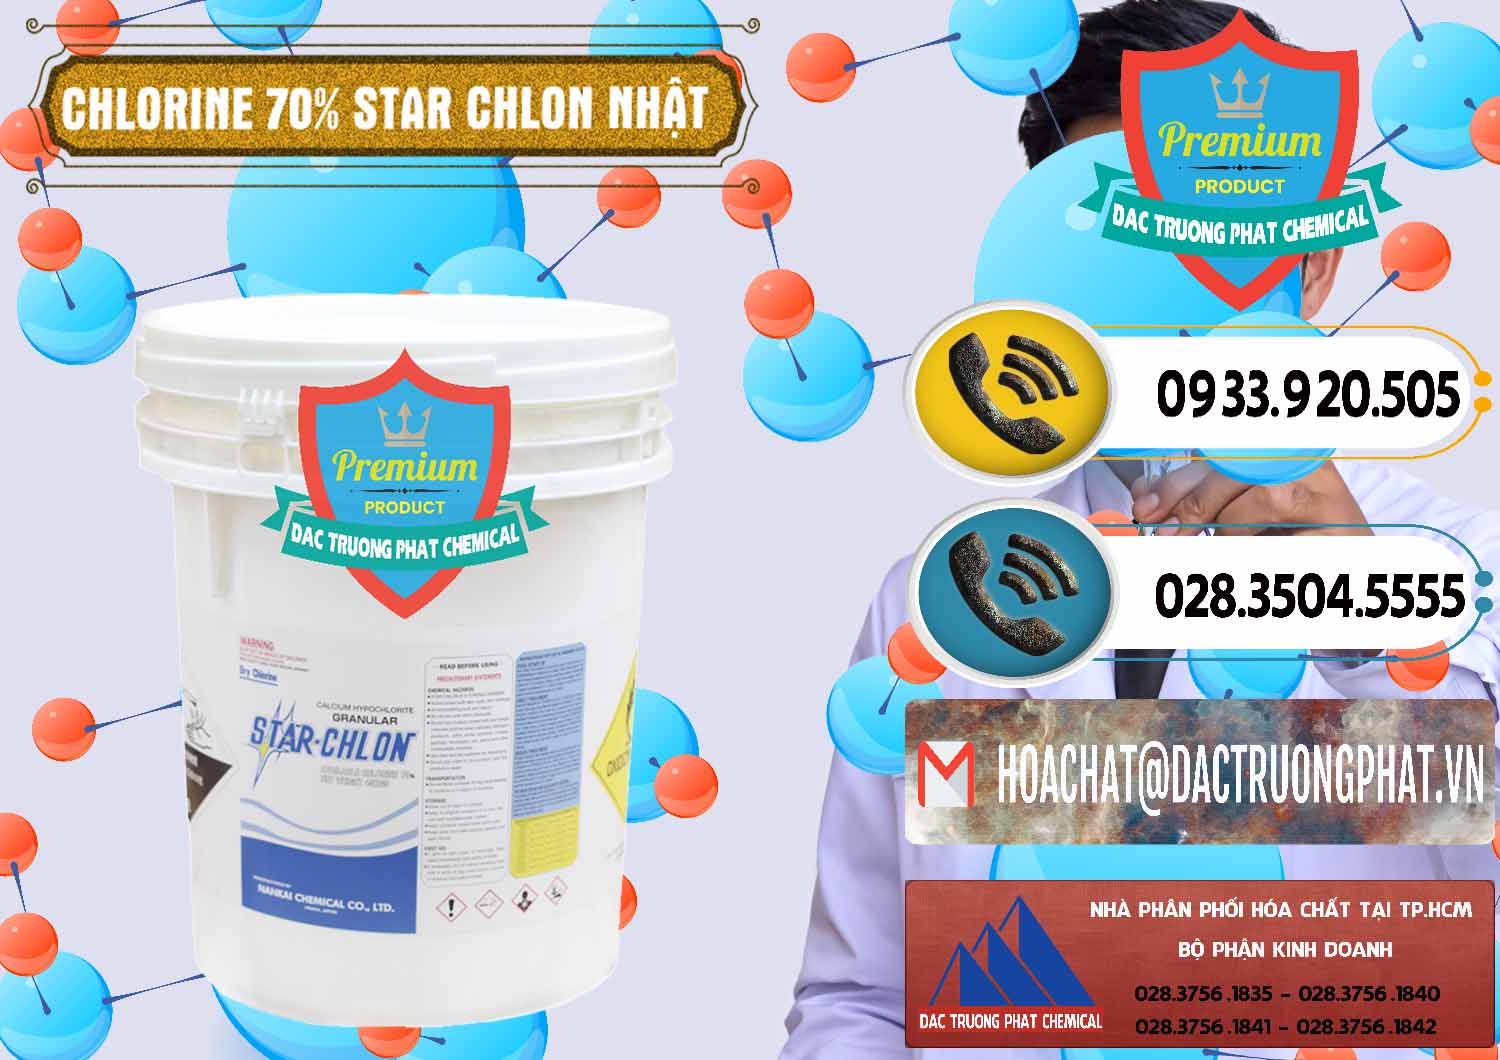 Chuyên bán _ cung ứng Clorin – Chlorine 70% Star Chlon Nhật Bản Japan - 0243 - Nơi phân phối & cung cấp hóa chất tại TP.HCM - hoachatdetnhuom.vn